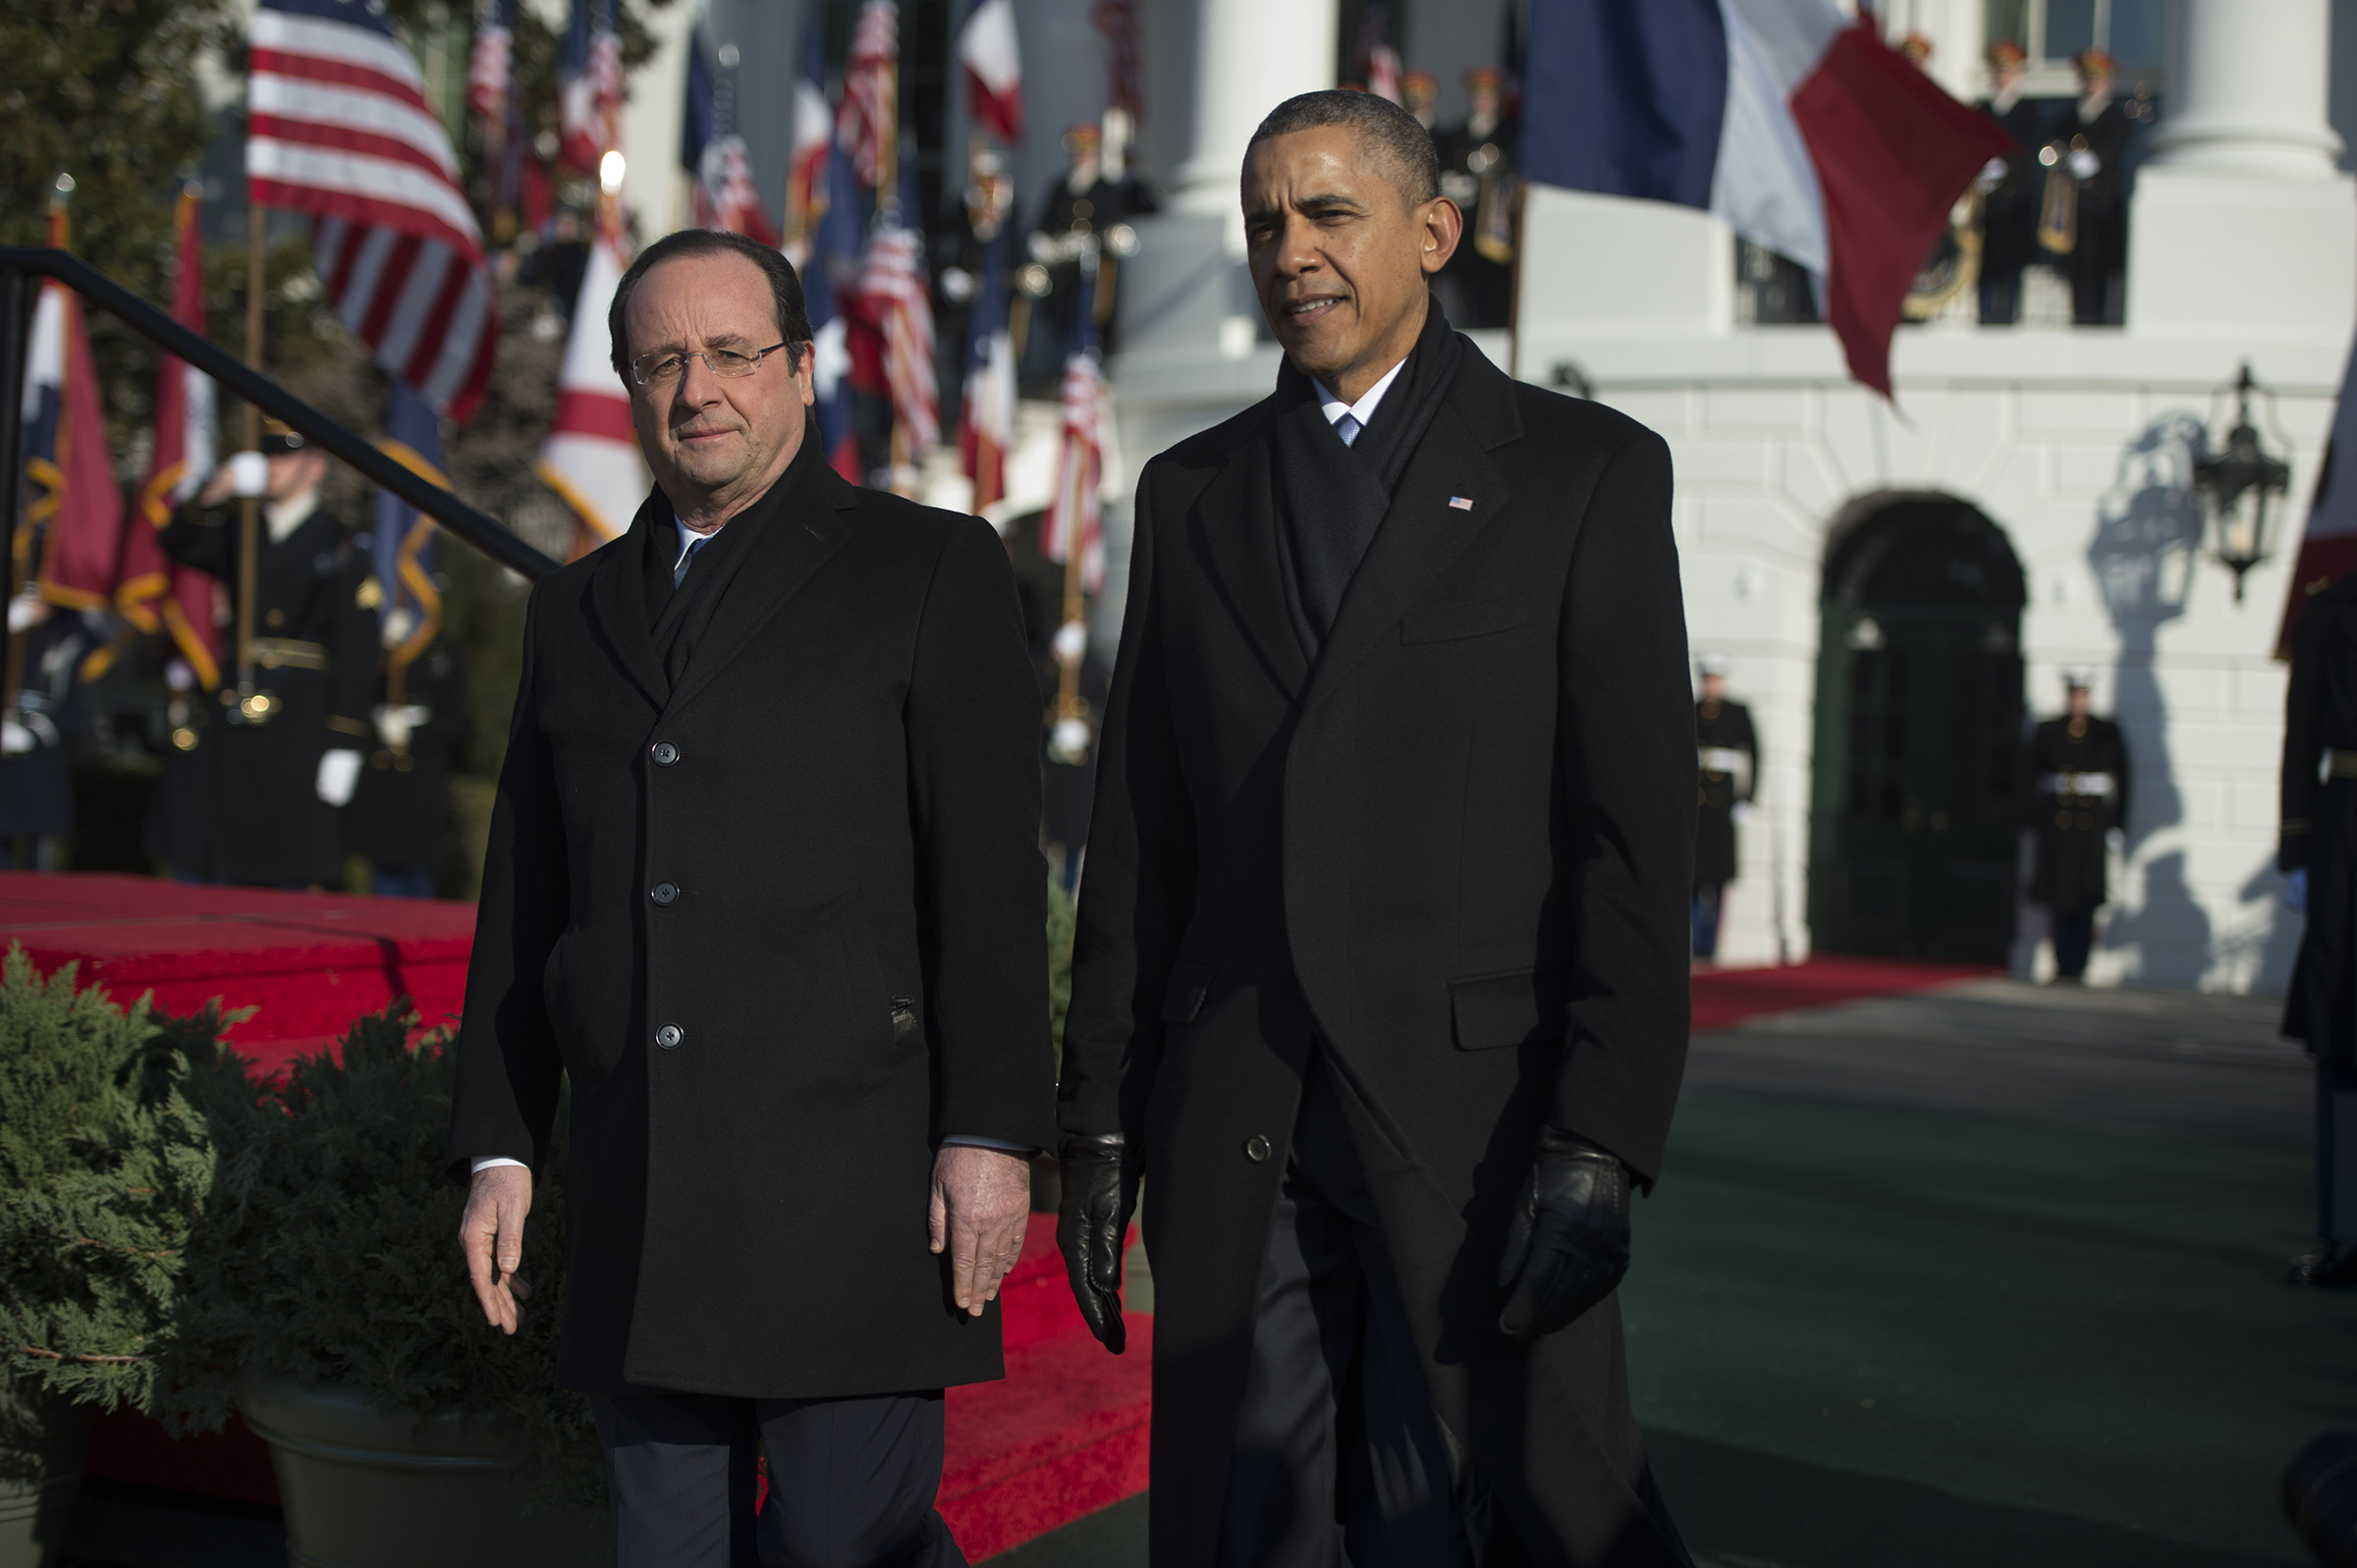 President Francois Hollande of France arrives for a State visit in Washington, DC